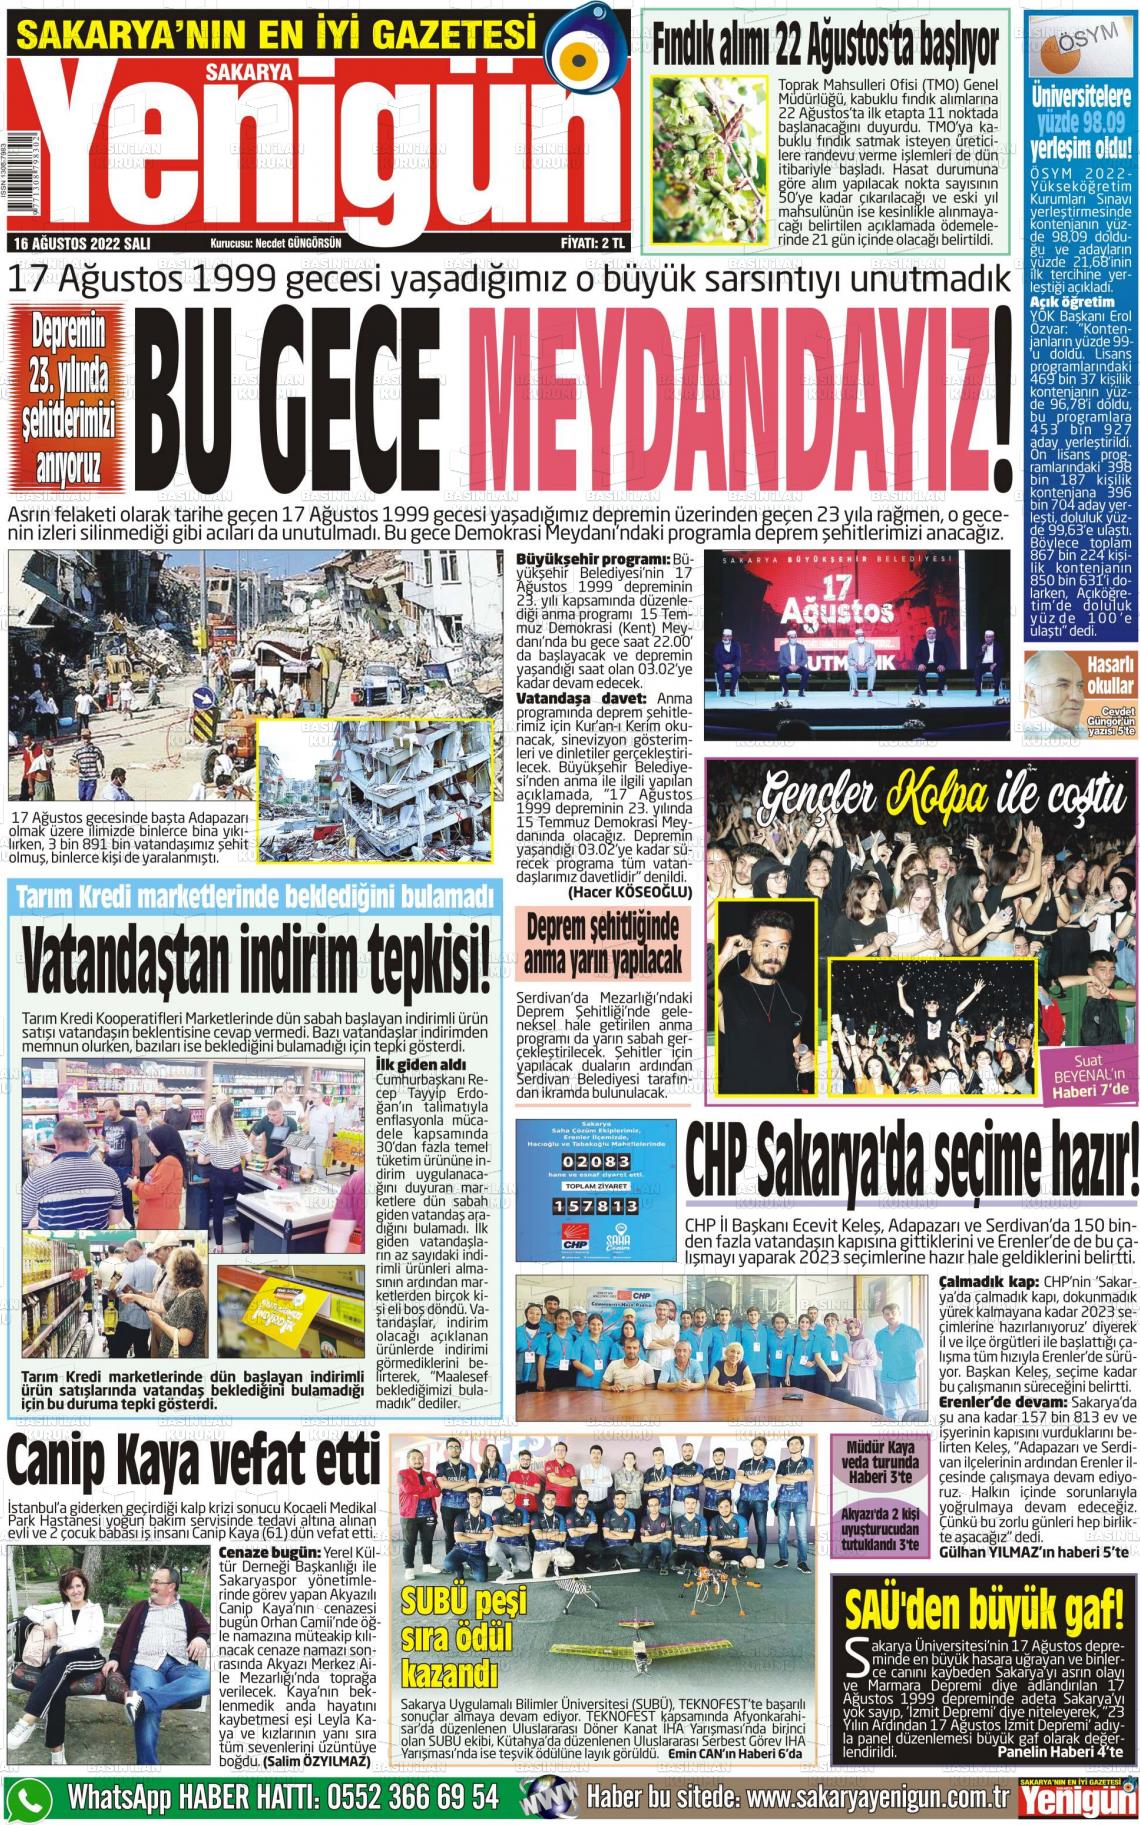 16 Ağustos 2022 Sakarya Yenigün Gazete Manşeti